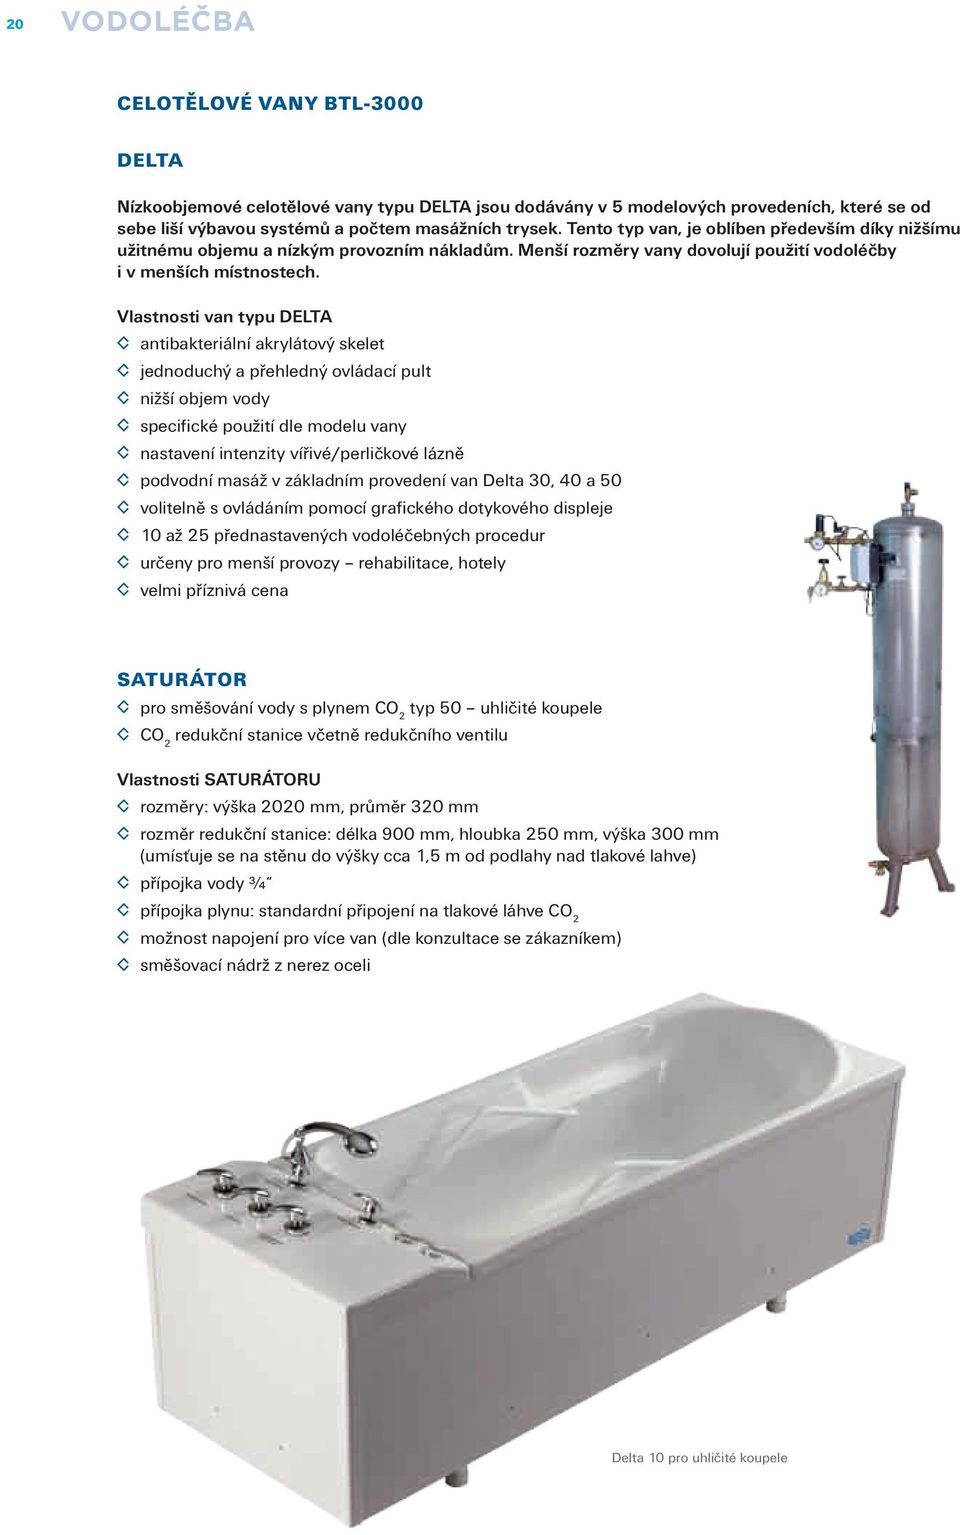 Vlastnosti van typu DELTA antibakteriální akrylátový skelet jednoduchý a přehledný ovládací pult nižší objem vody specifické použití dle modelu vany nastavení intenzity vířivé/perličkové lázně